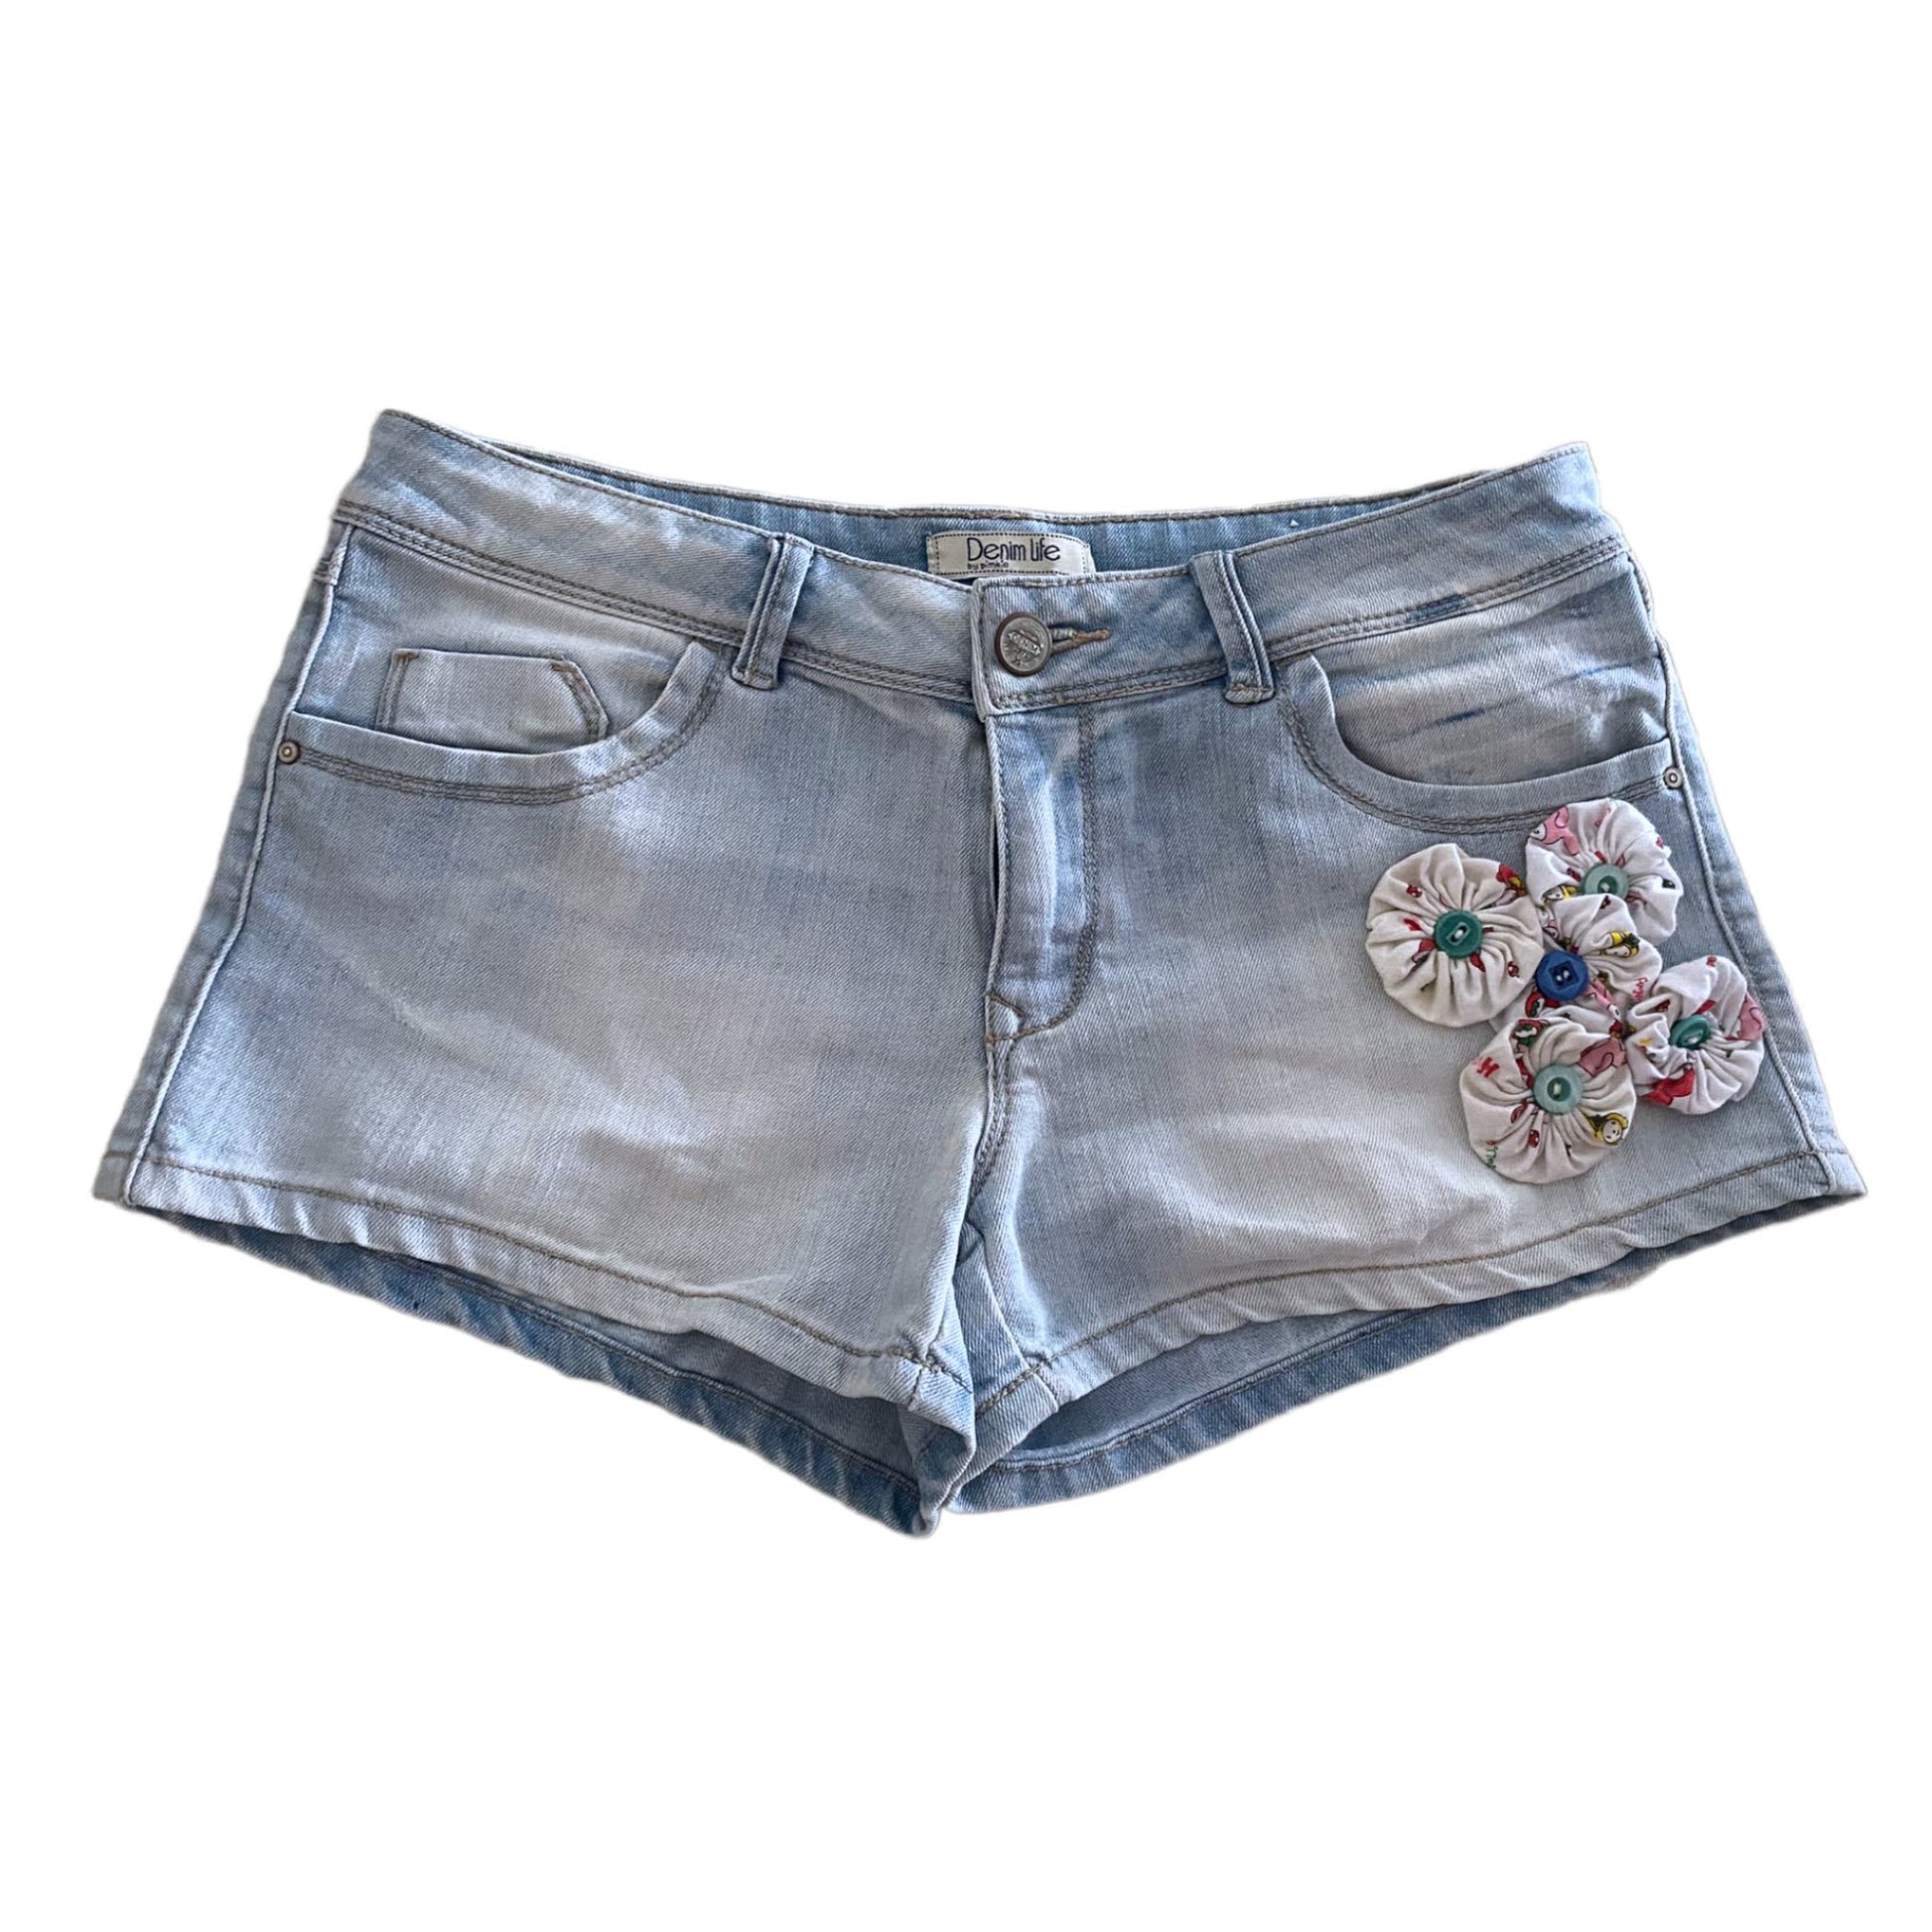 Pantalón corto Decorado - Mujer - Pimkie Talla 38 – La de Algodón